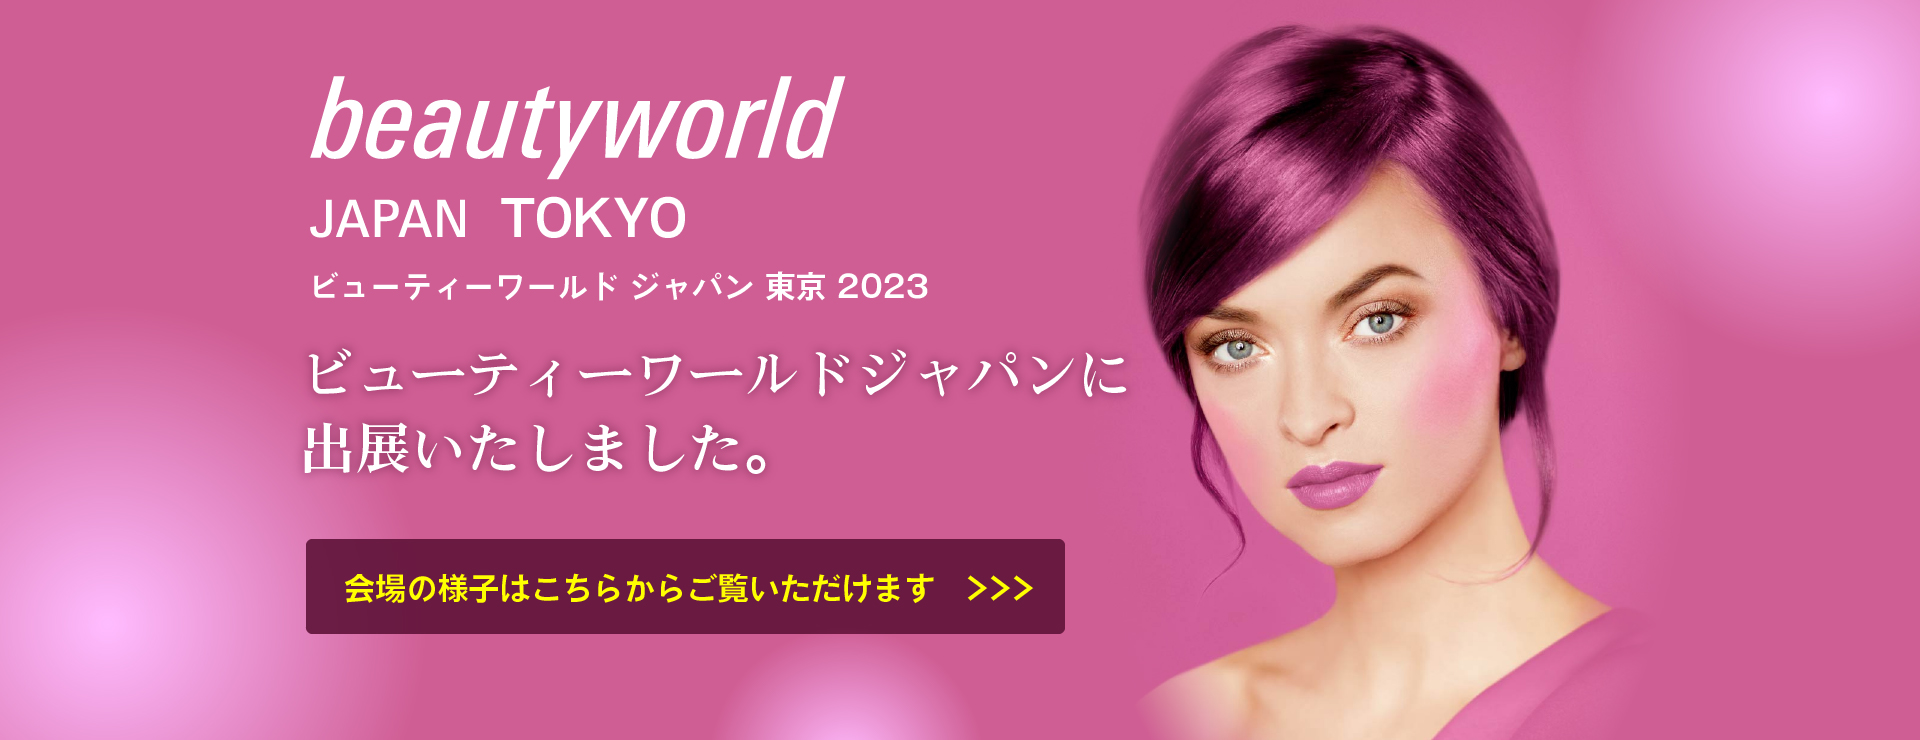 ビューティーワールド ジャパン 東京 2023